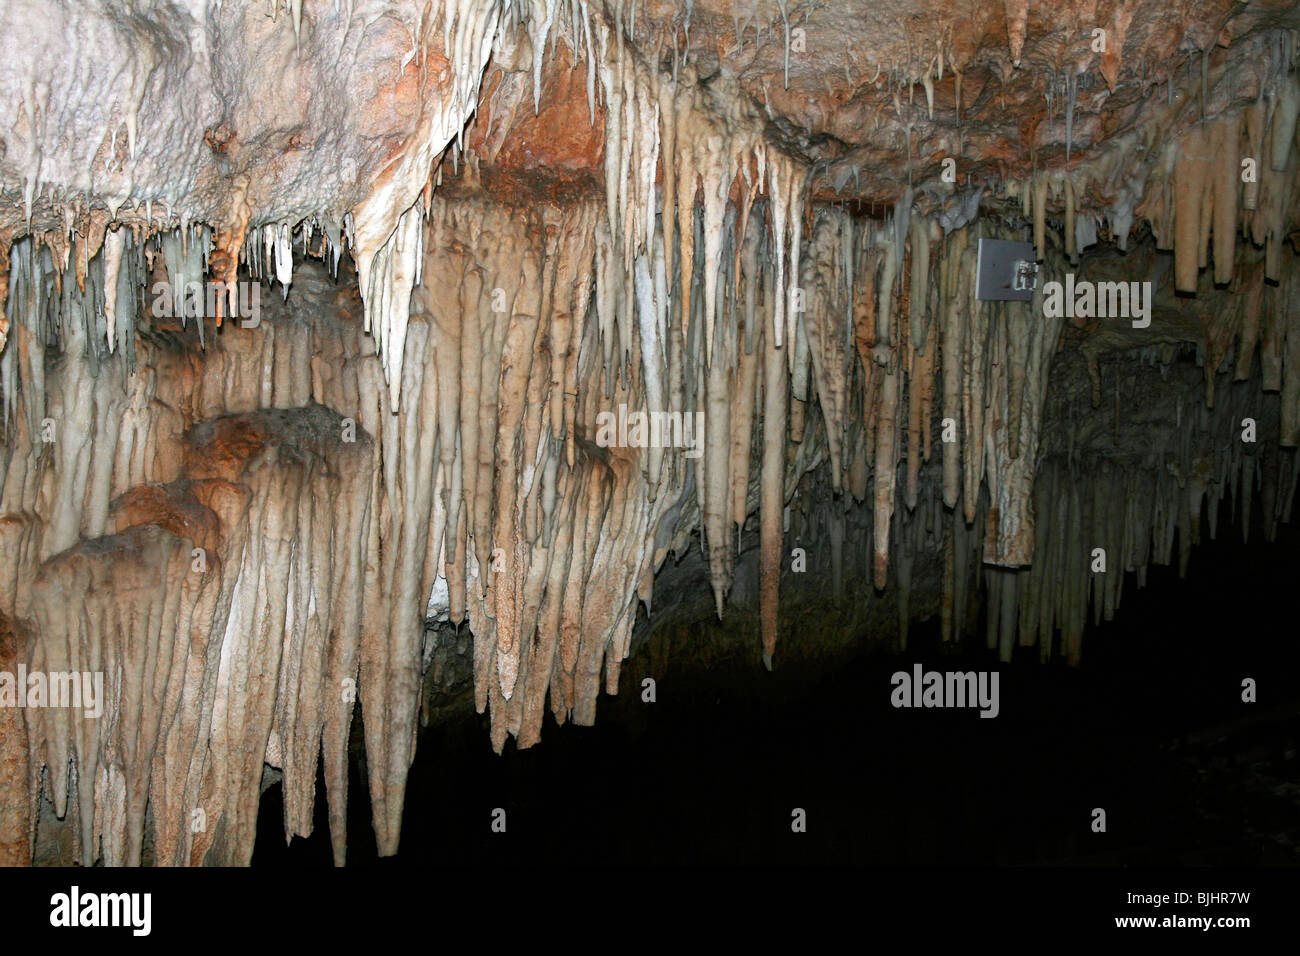 Bermudas Crystal Cave es el más conocido de la isla las cavernas subterráneas. Retratada aquí es una sección de estalactitas blancas. Foto de stock